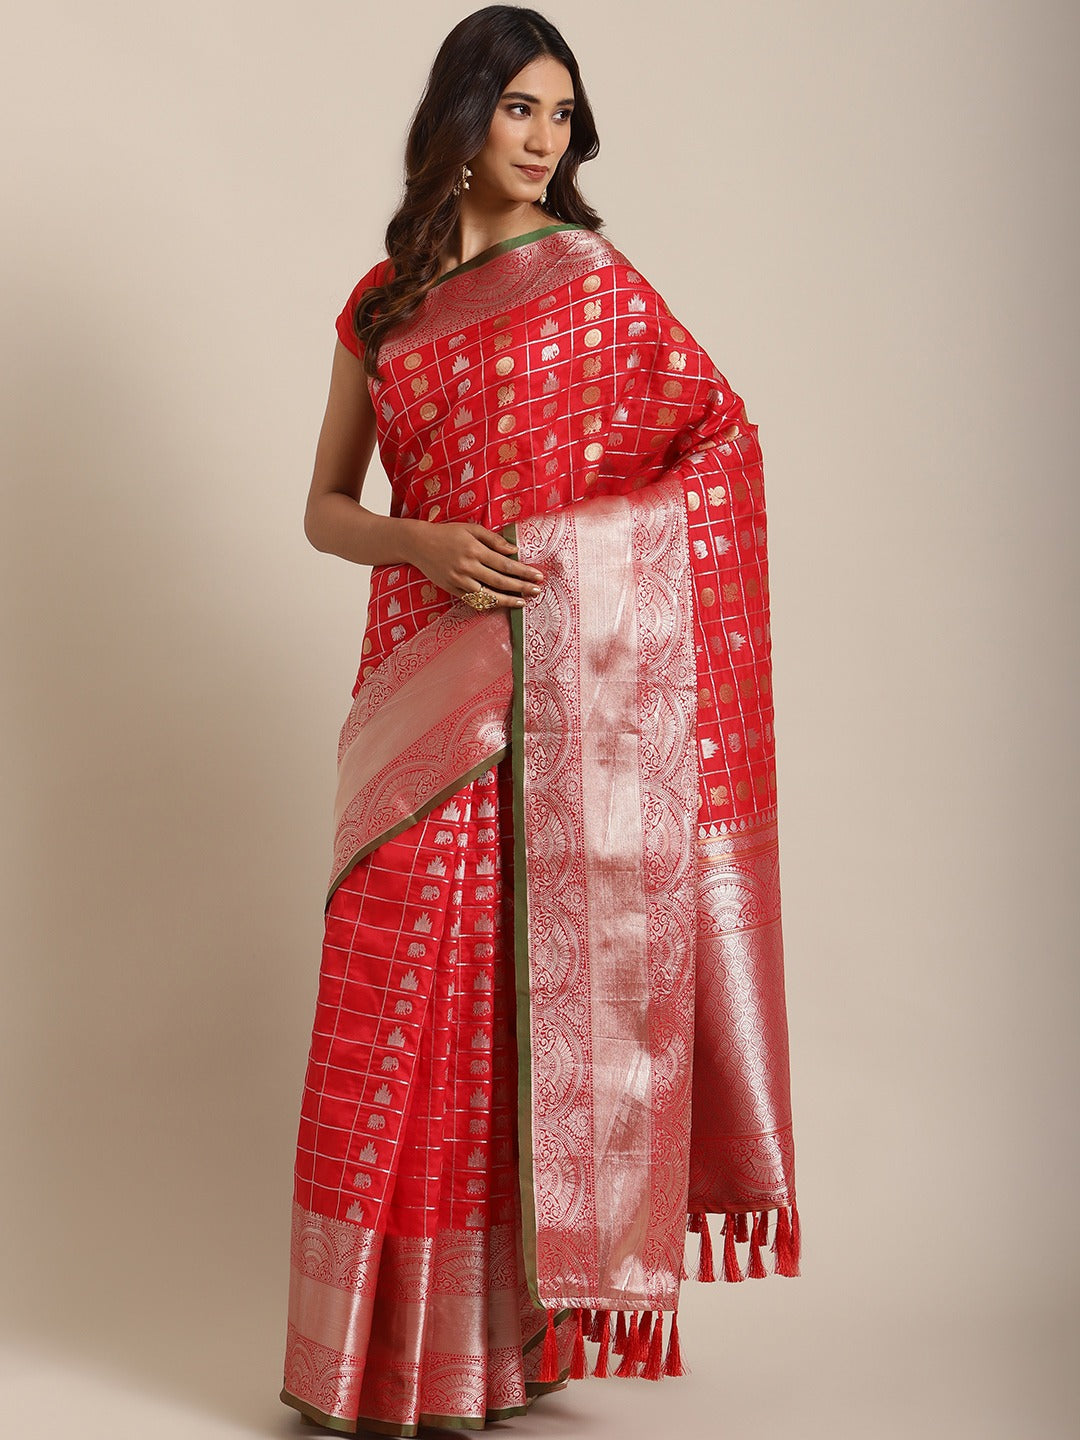  Exclusive Red Colour Woven Design Banarasi Saree